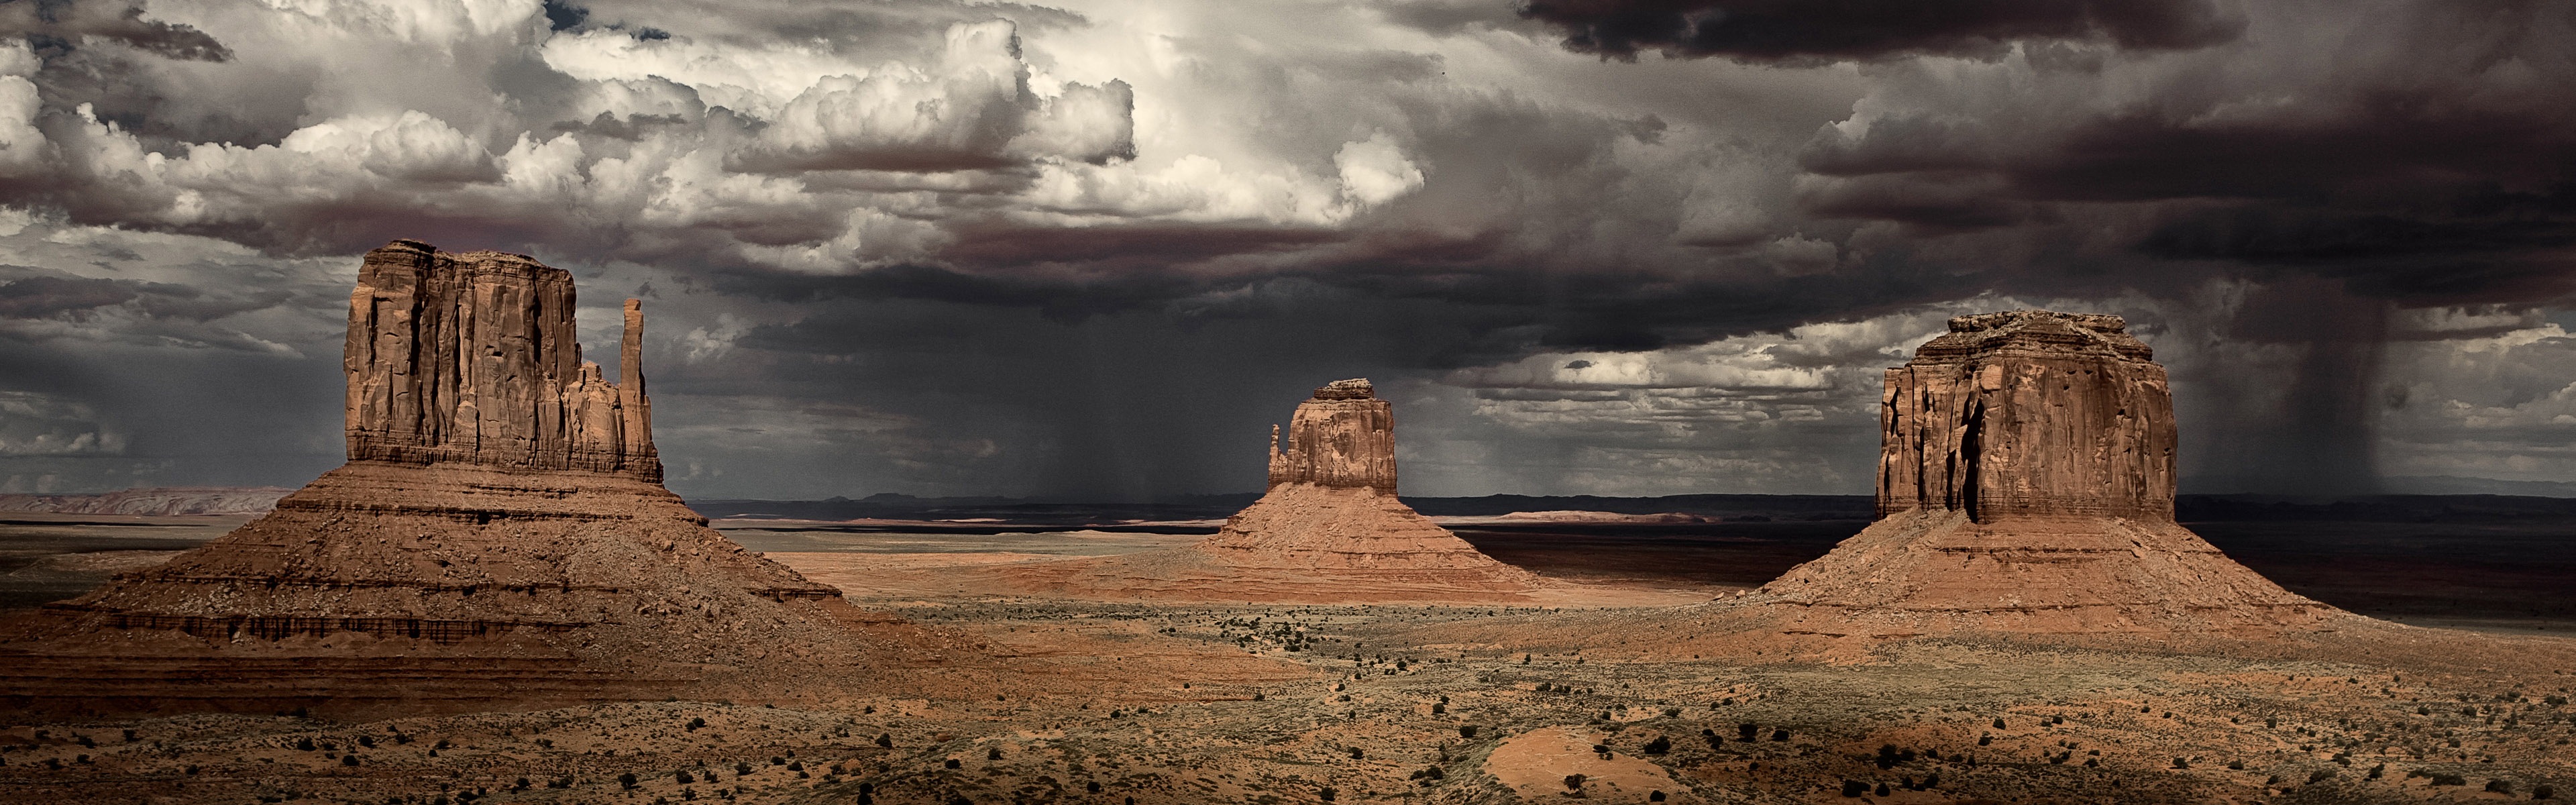 Les déserts chauds et arides, de Windows 8 fonds d'écran widescreen panoramique #7 - 3840x1200